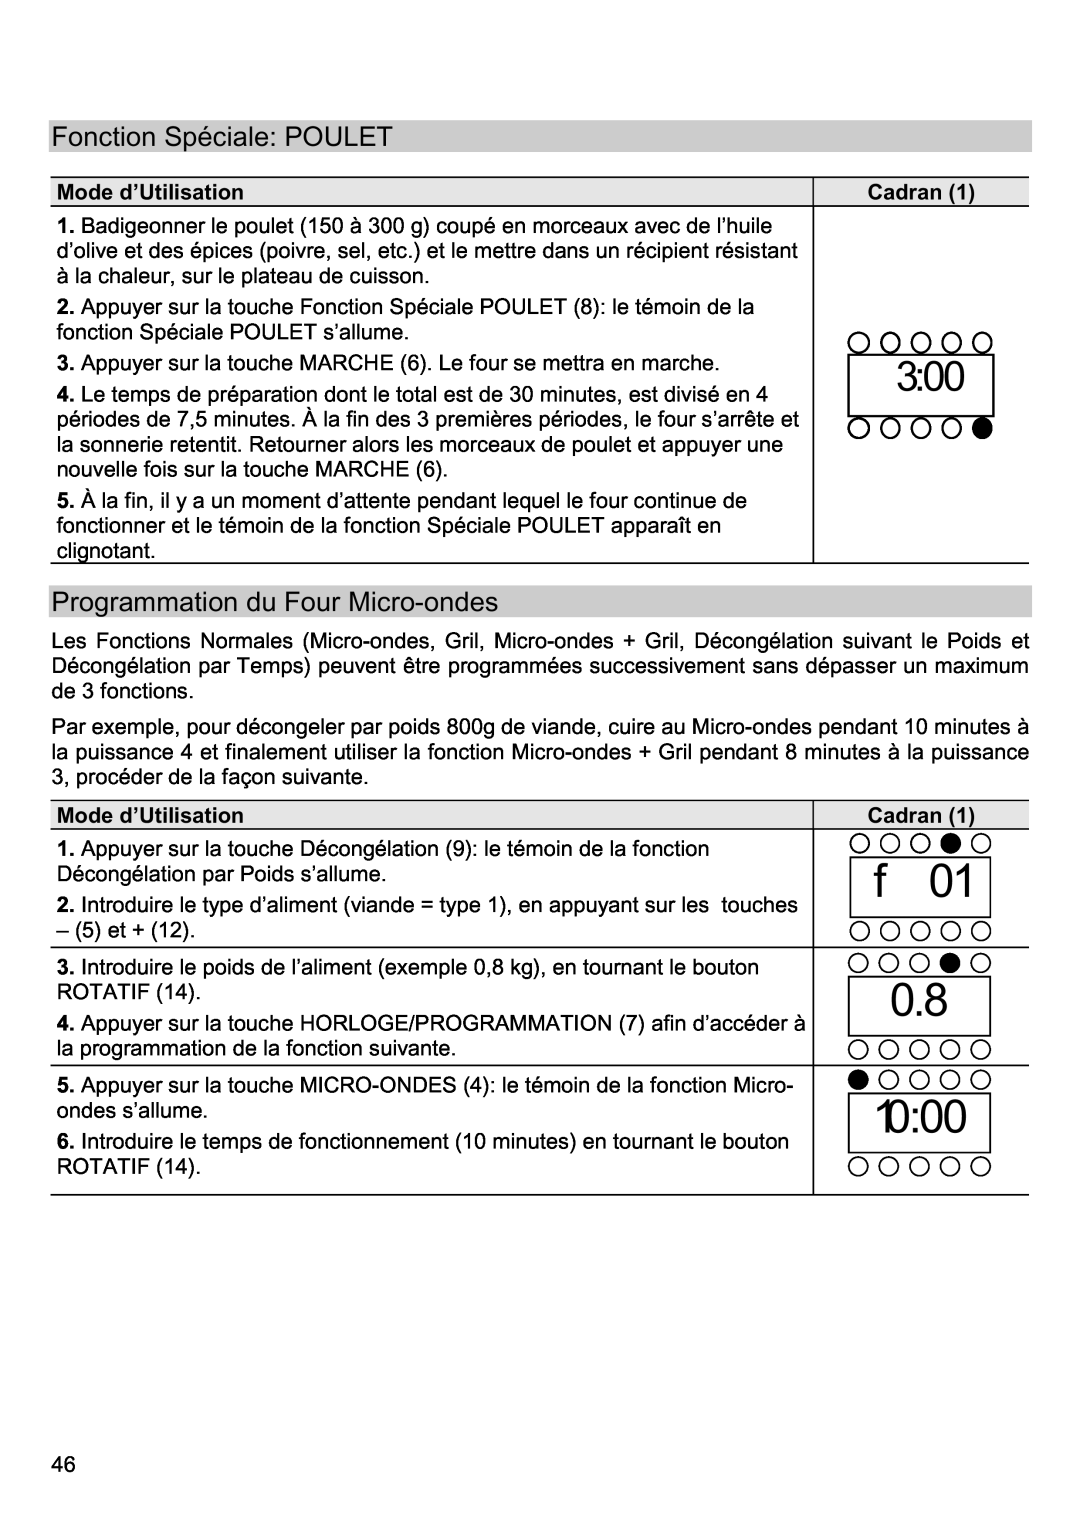 Smeg FME20EX manual Fonction Spéciale POULET, Programmation du Four Micro-ondes 